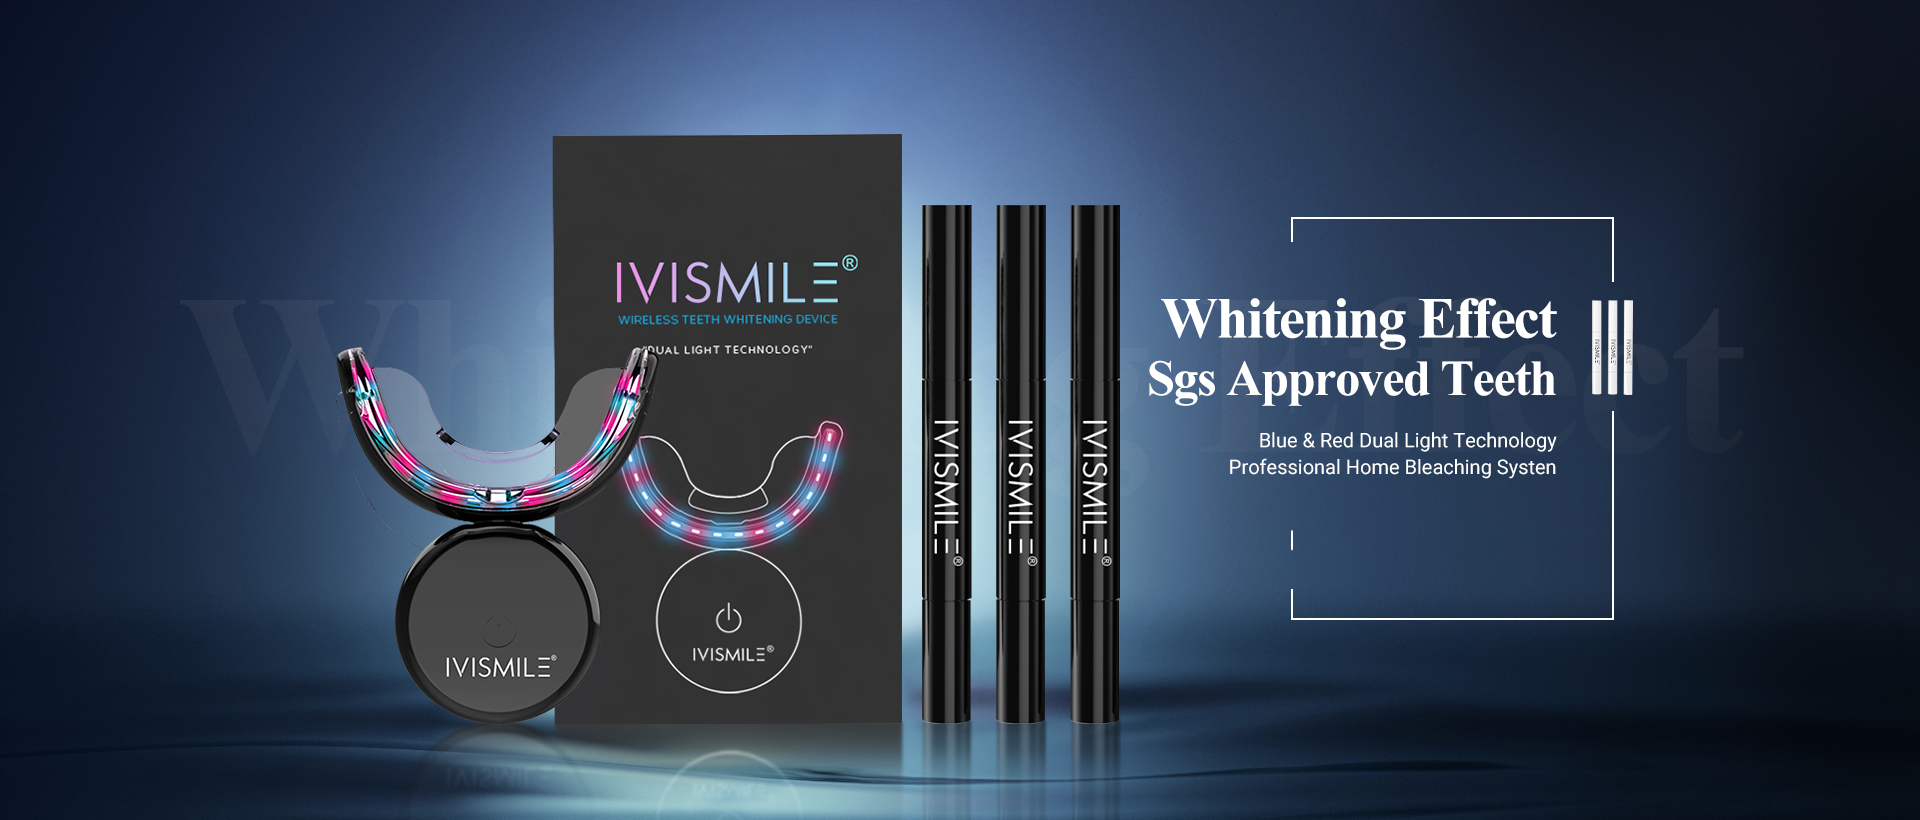 Teeth Whiten Led Wireless Zahnaufhellungsset LED-LICHT